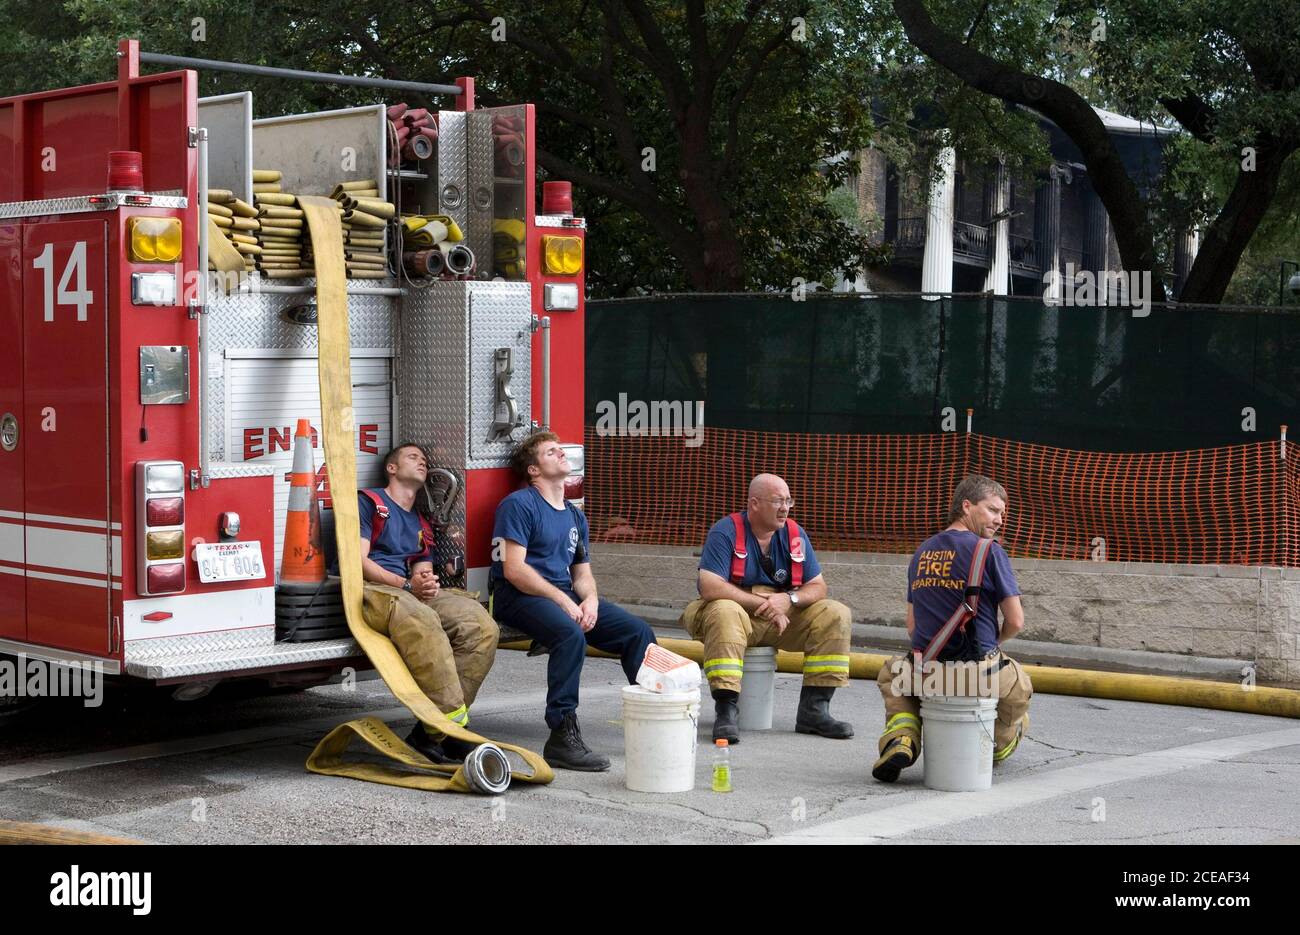 Austin, TX 8. Juni 2008: Müde Feuerwehrleute machen eine Pause, nachdem sie auf ein frühmorgendliches Feuer mit vier Alarmen reagiert haben, das das Landgut des Gouverneurs von Texas in der Innenstadt von Austin ausrottete. Mehr als 100 Feuerwehrleute kämpften um die Rettung der 152 Jahre alten Struktur. Das Gebäude wurde gerade renoviert und alle historischen und antiken Möbel waren im Lager. Beamte vermuten, dass das Feuer von einem Brandstifter ausgelöst wurde. ©Bob Daemmrich Stockfoto